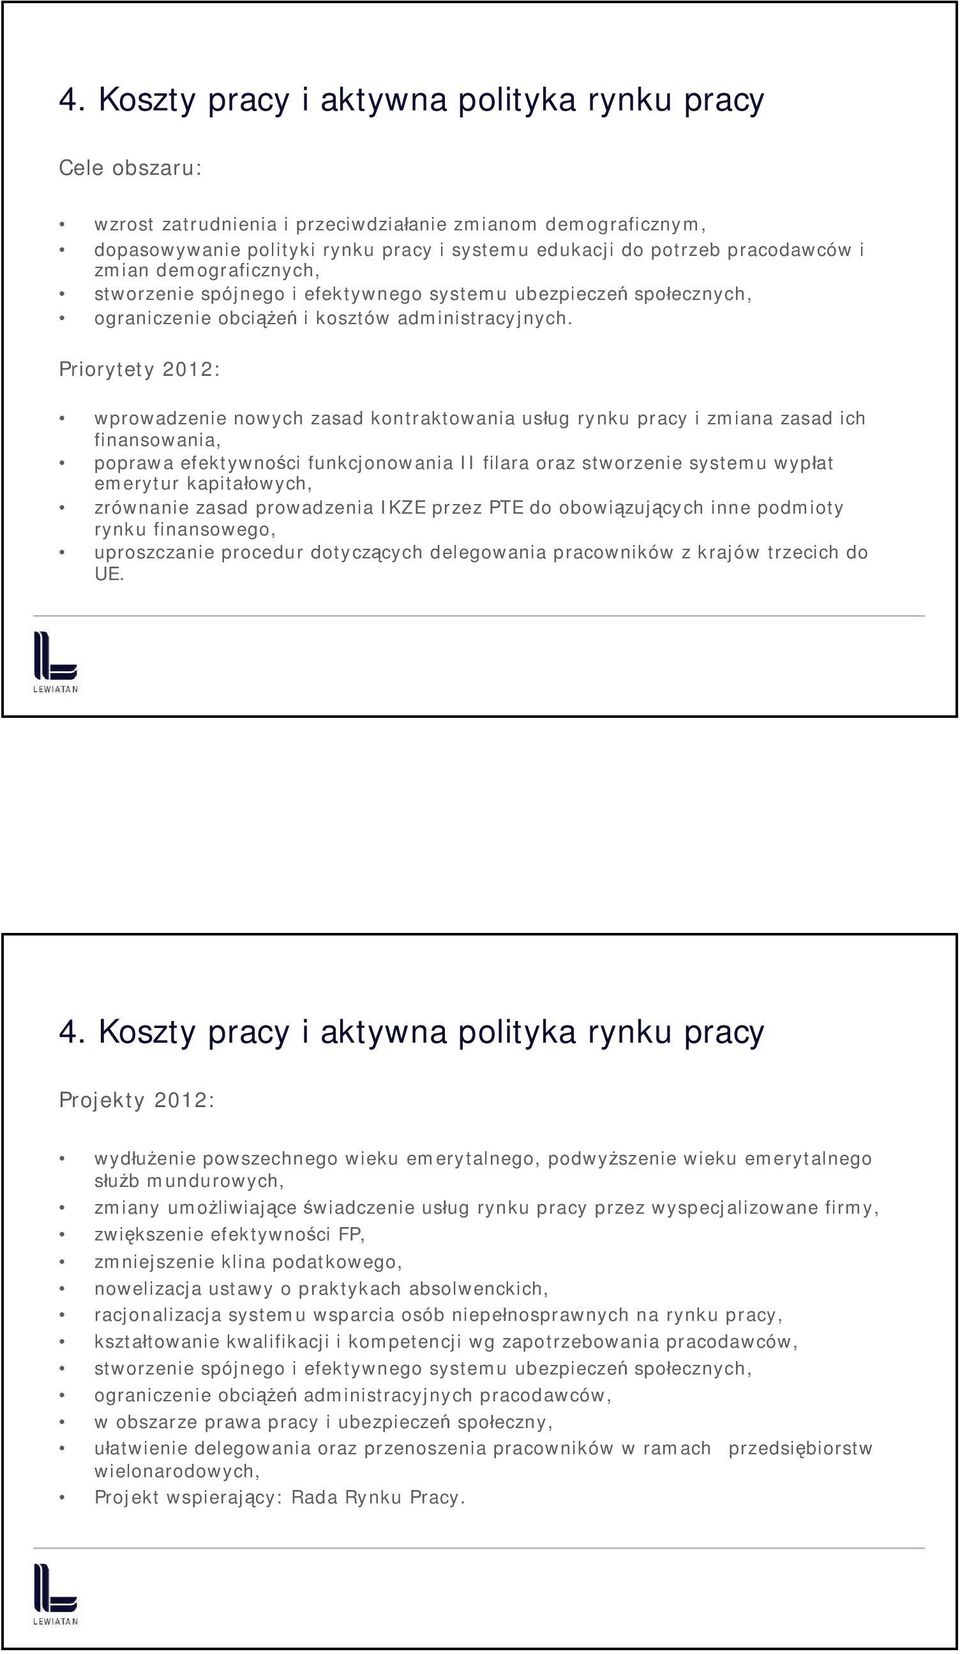 Priorytety 2012: wprowadzenie nowych zasad kontraktowania usług rynku pracy i zmiana zasad ich finansowania, poprawa efektywności funkcjonowania II filara oraz stworzenie systemu wypłat emerytur